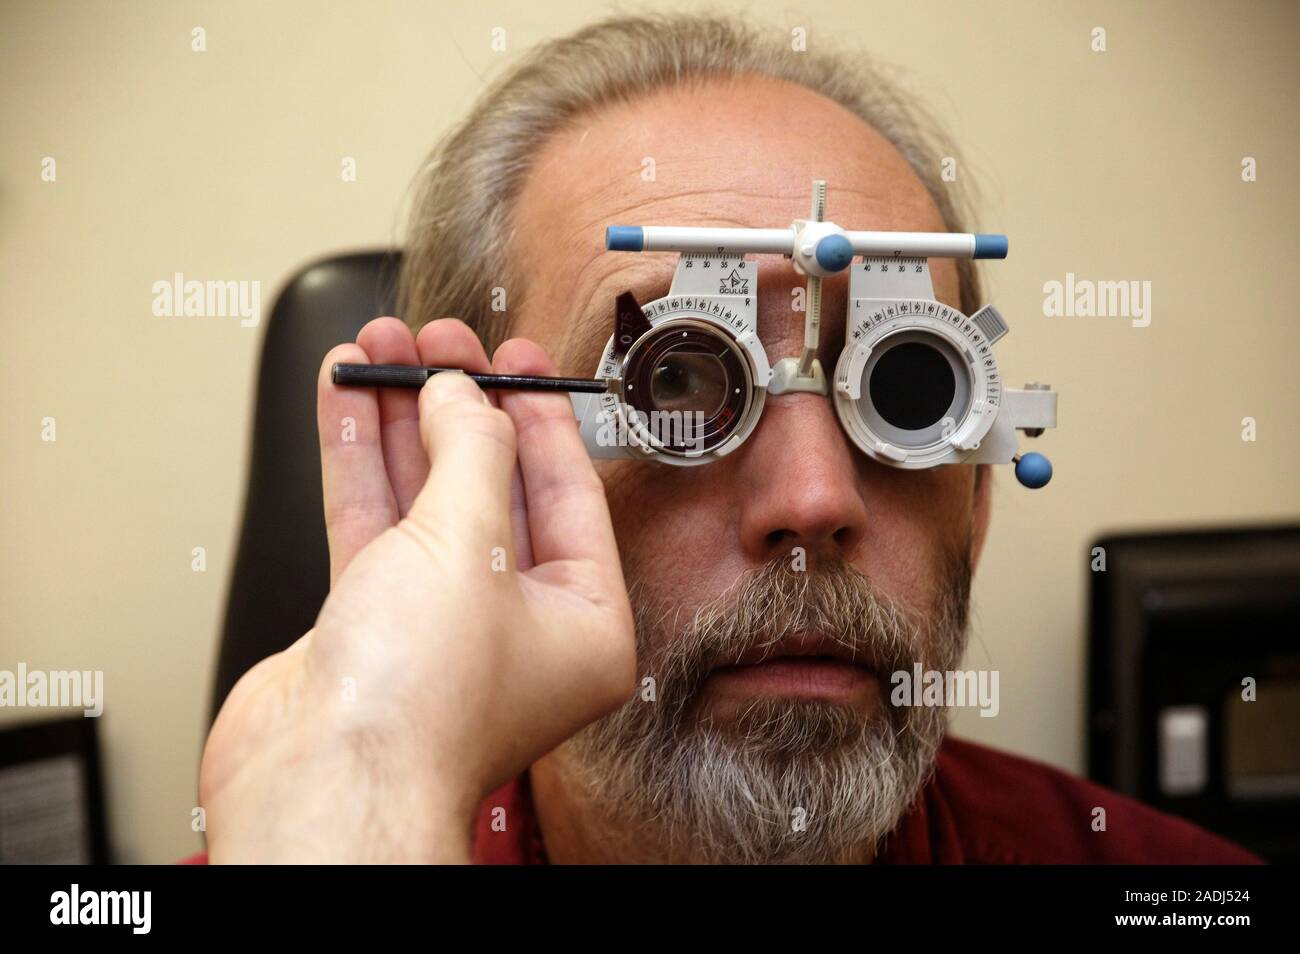 Hecho un desastre raíz Atravesar Prueba ocular. Hombre vestido con un conjunto de lentes ajustables durante  un examen ocular. La mano del optometrista es ajustar uno de los lentes. El  hombre está mirando Fotografía de stock -